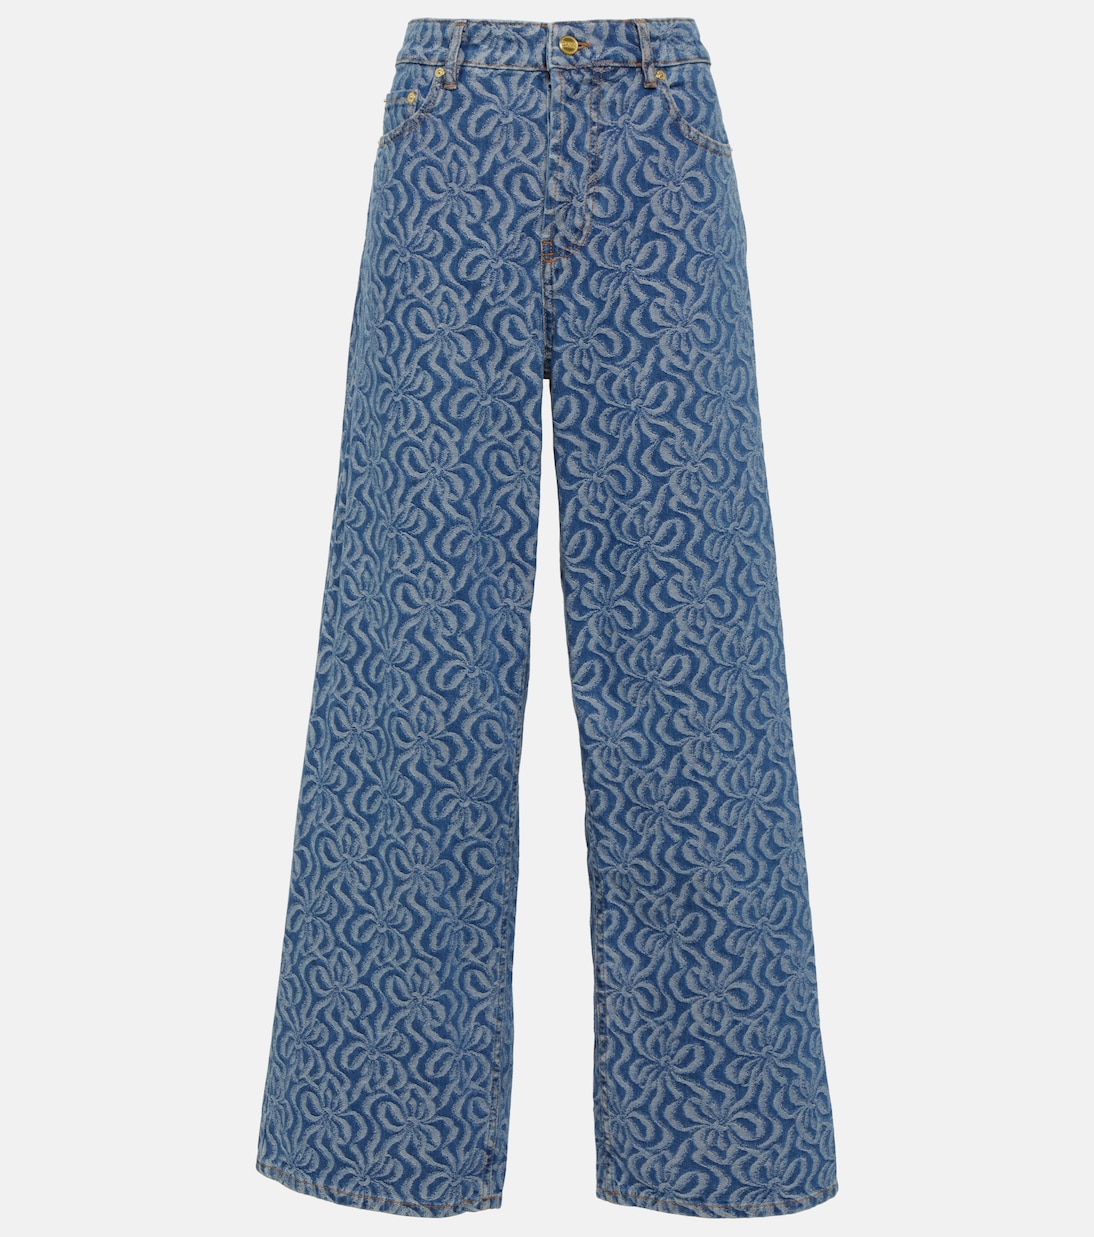 Жаккардовые широкие джинсы со средней посадкой Ganni, синий широкие джинсы со средней посадкой синий